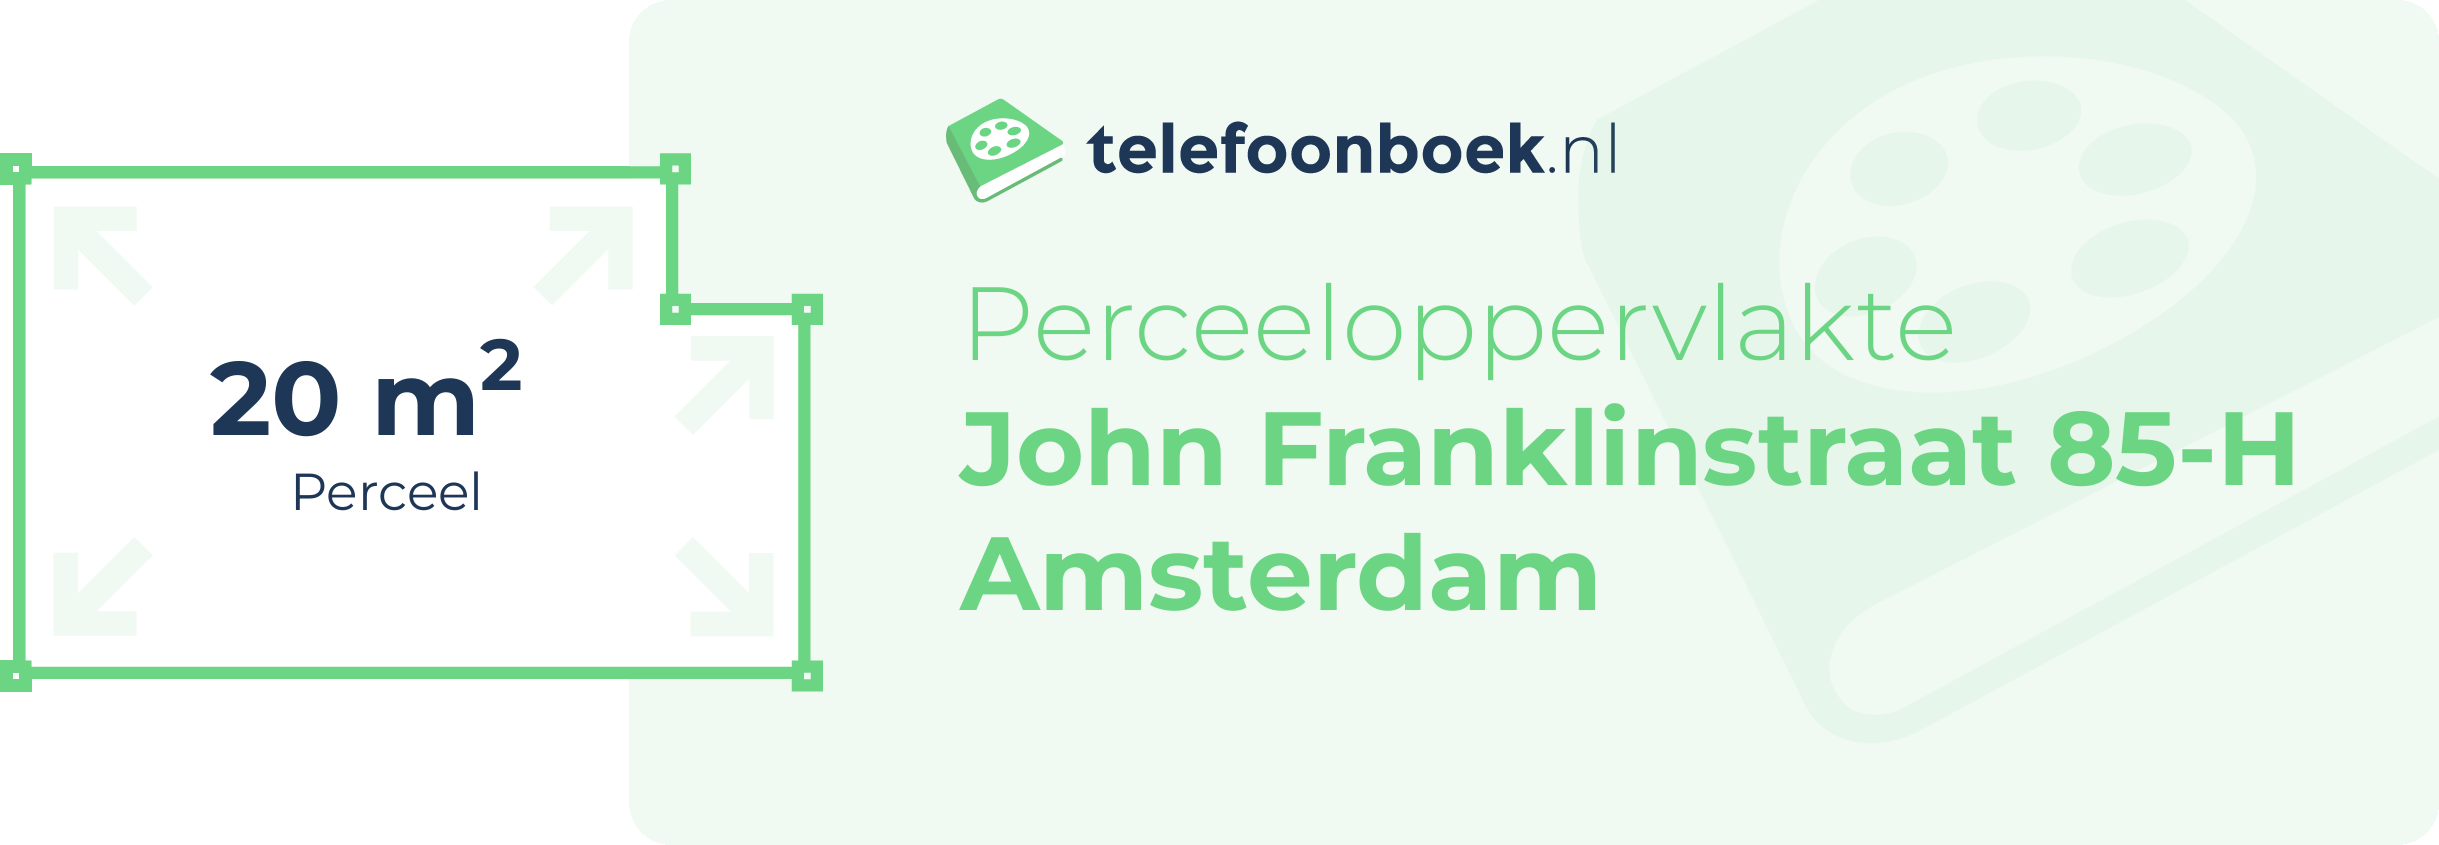 Perceeloppervlakte John Franklinstraat 85-H Amsterdam